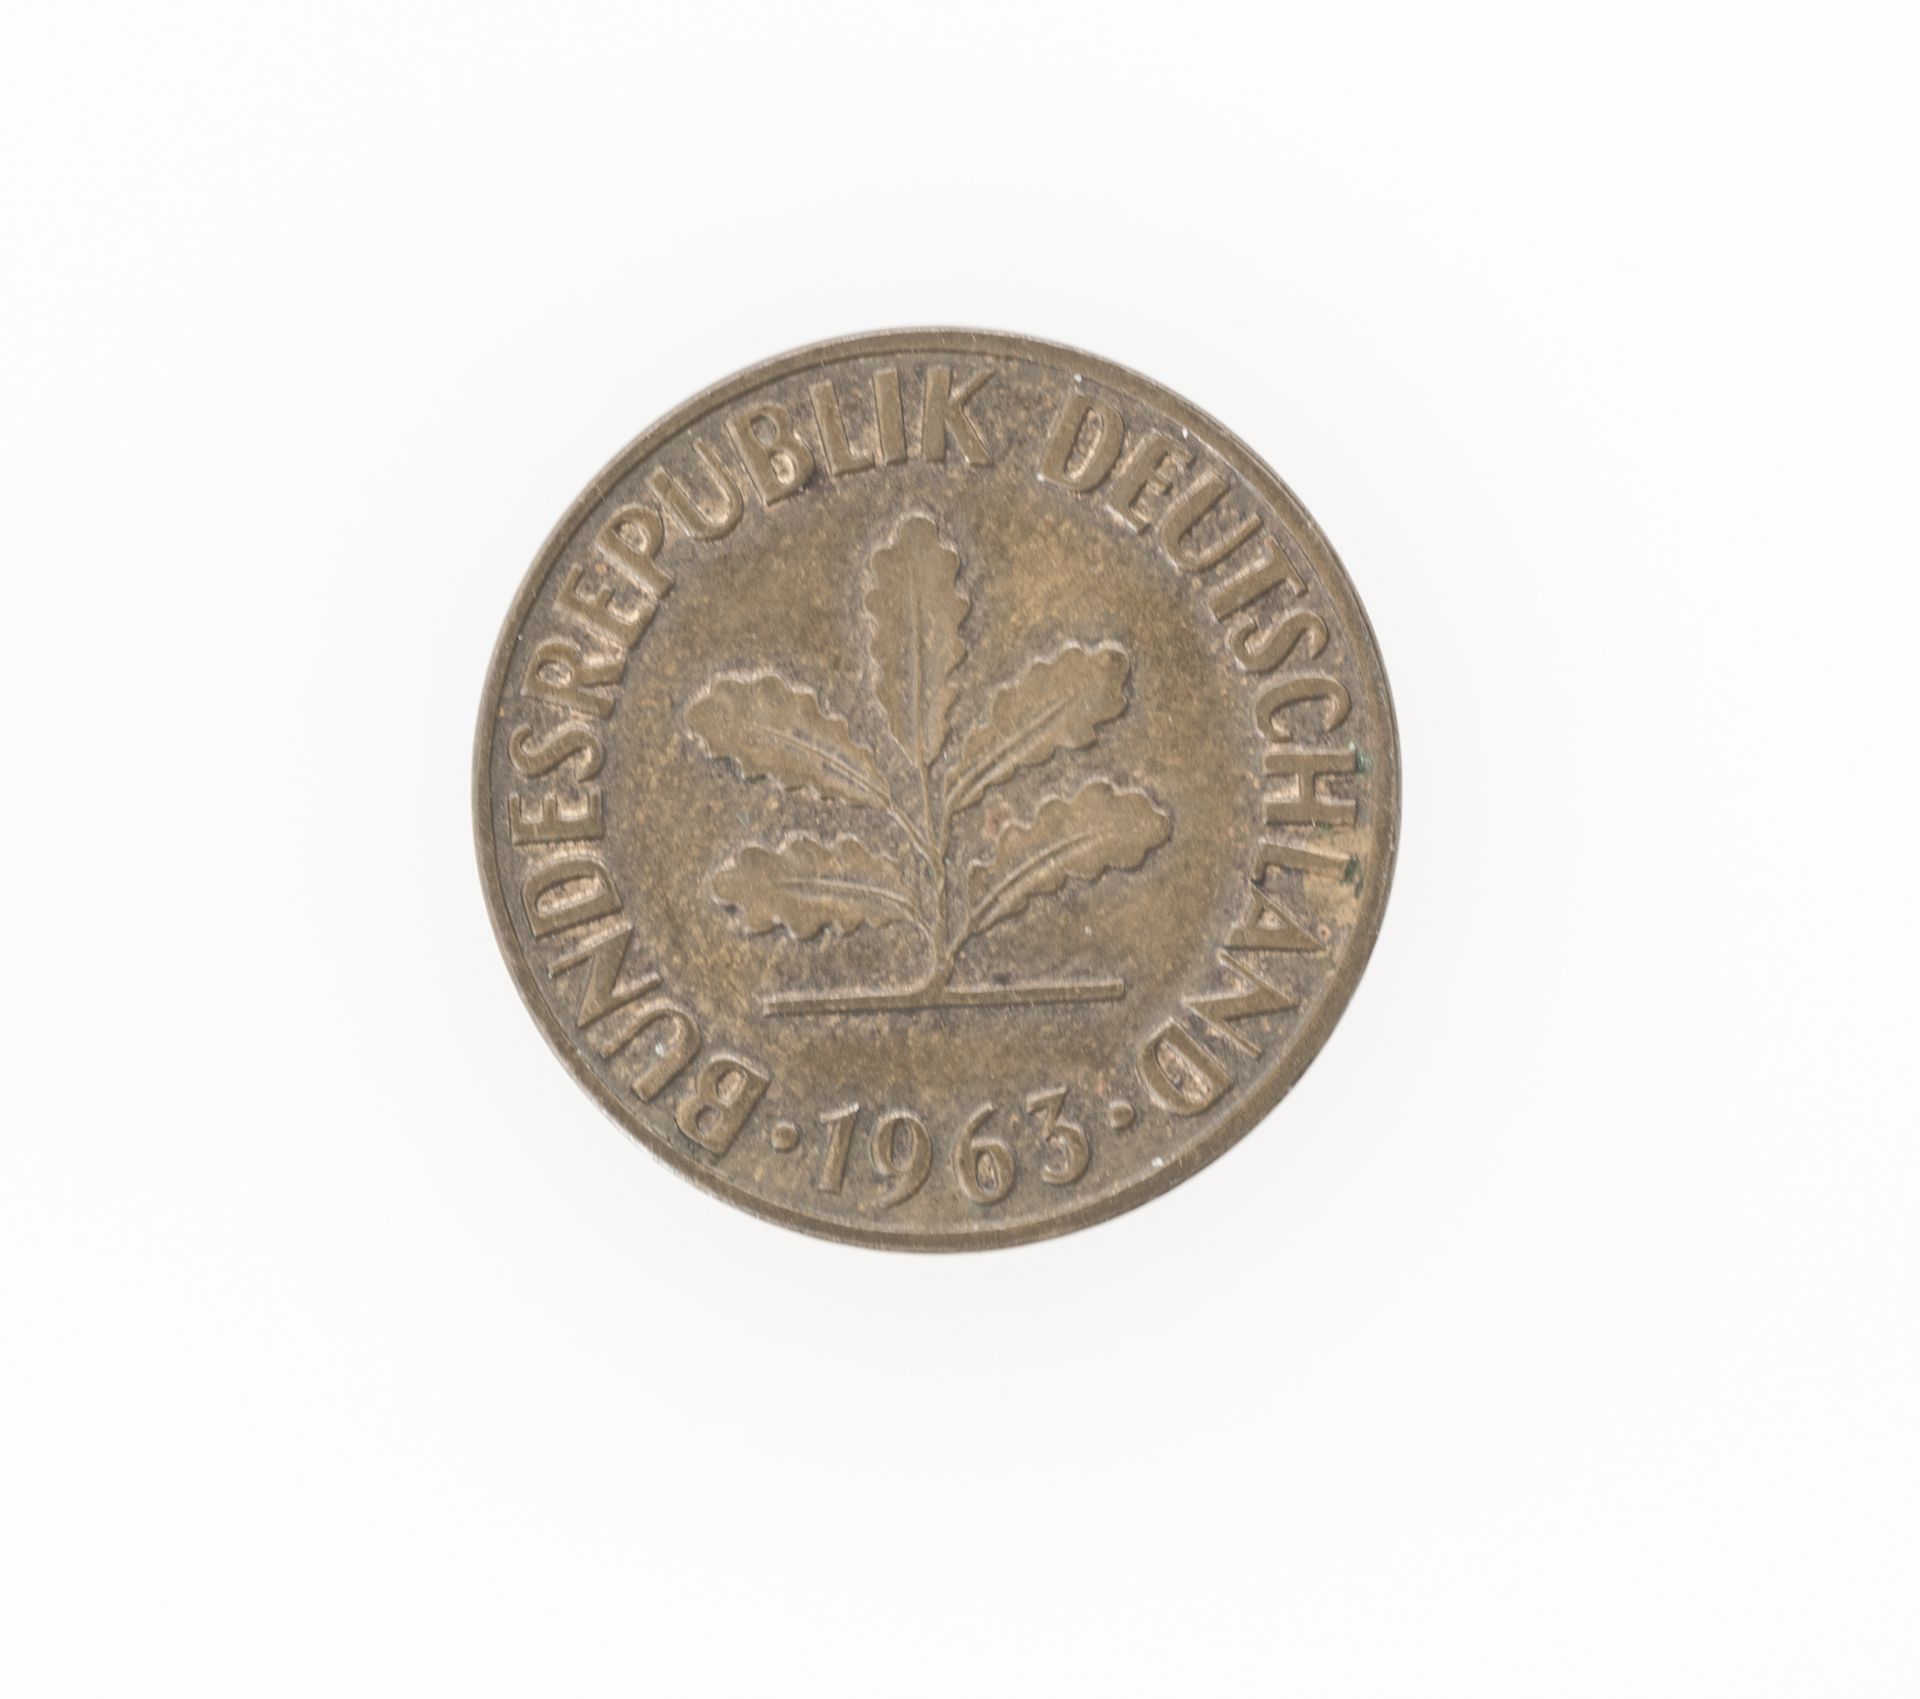 Deutschland 1963, 2 Pfennig - Münze Fehlprägung auf Nominalseite. Nicht magnetisch. - Image 2 of 2